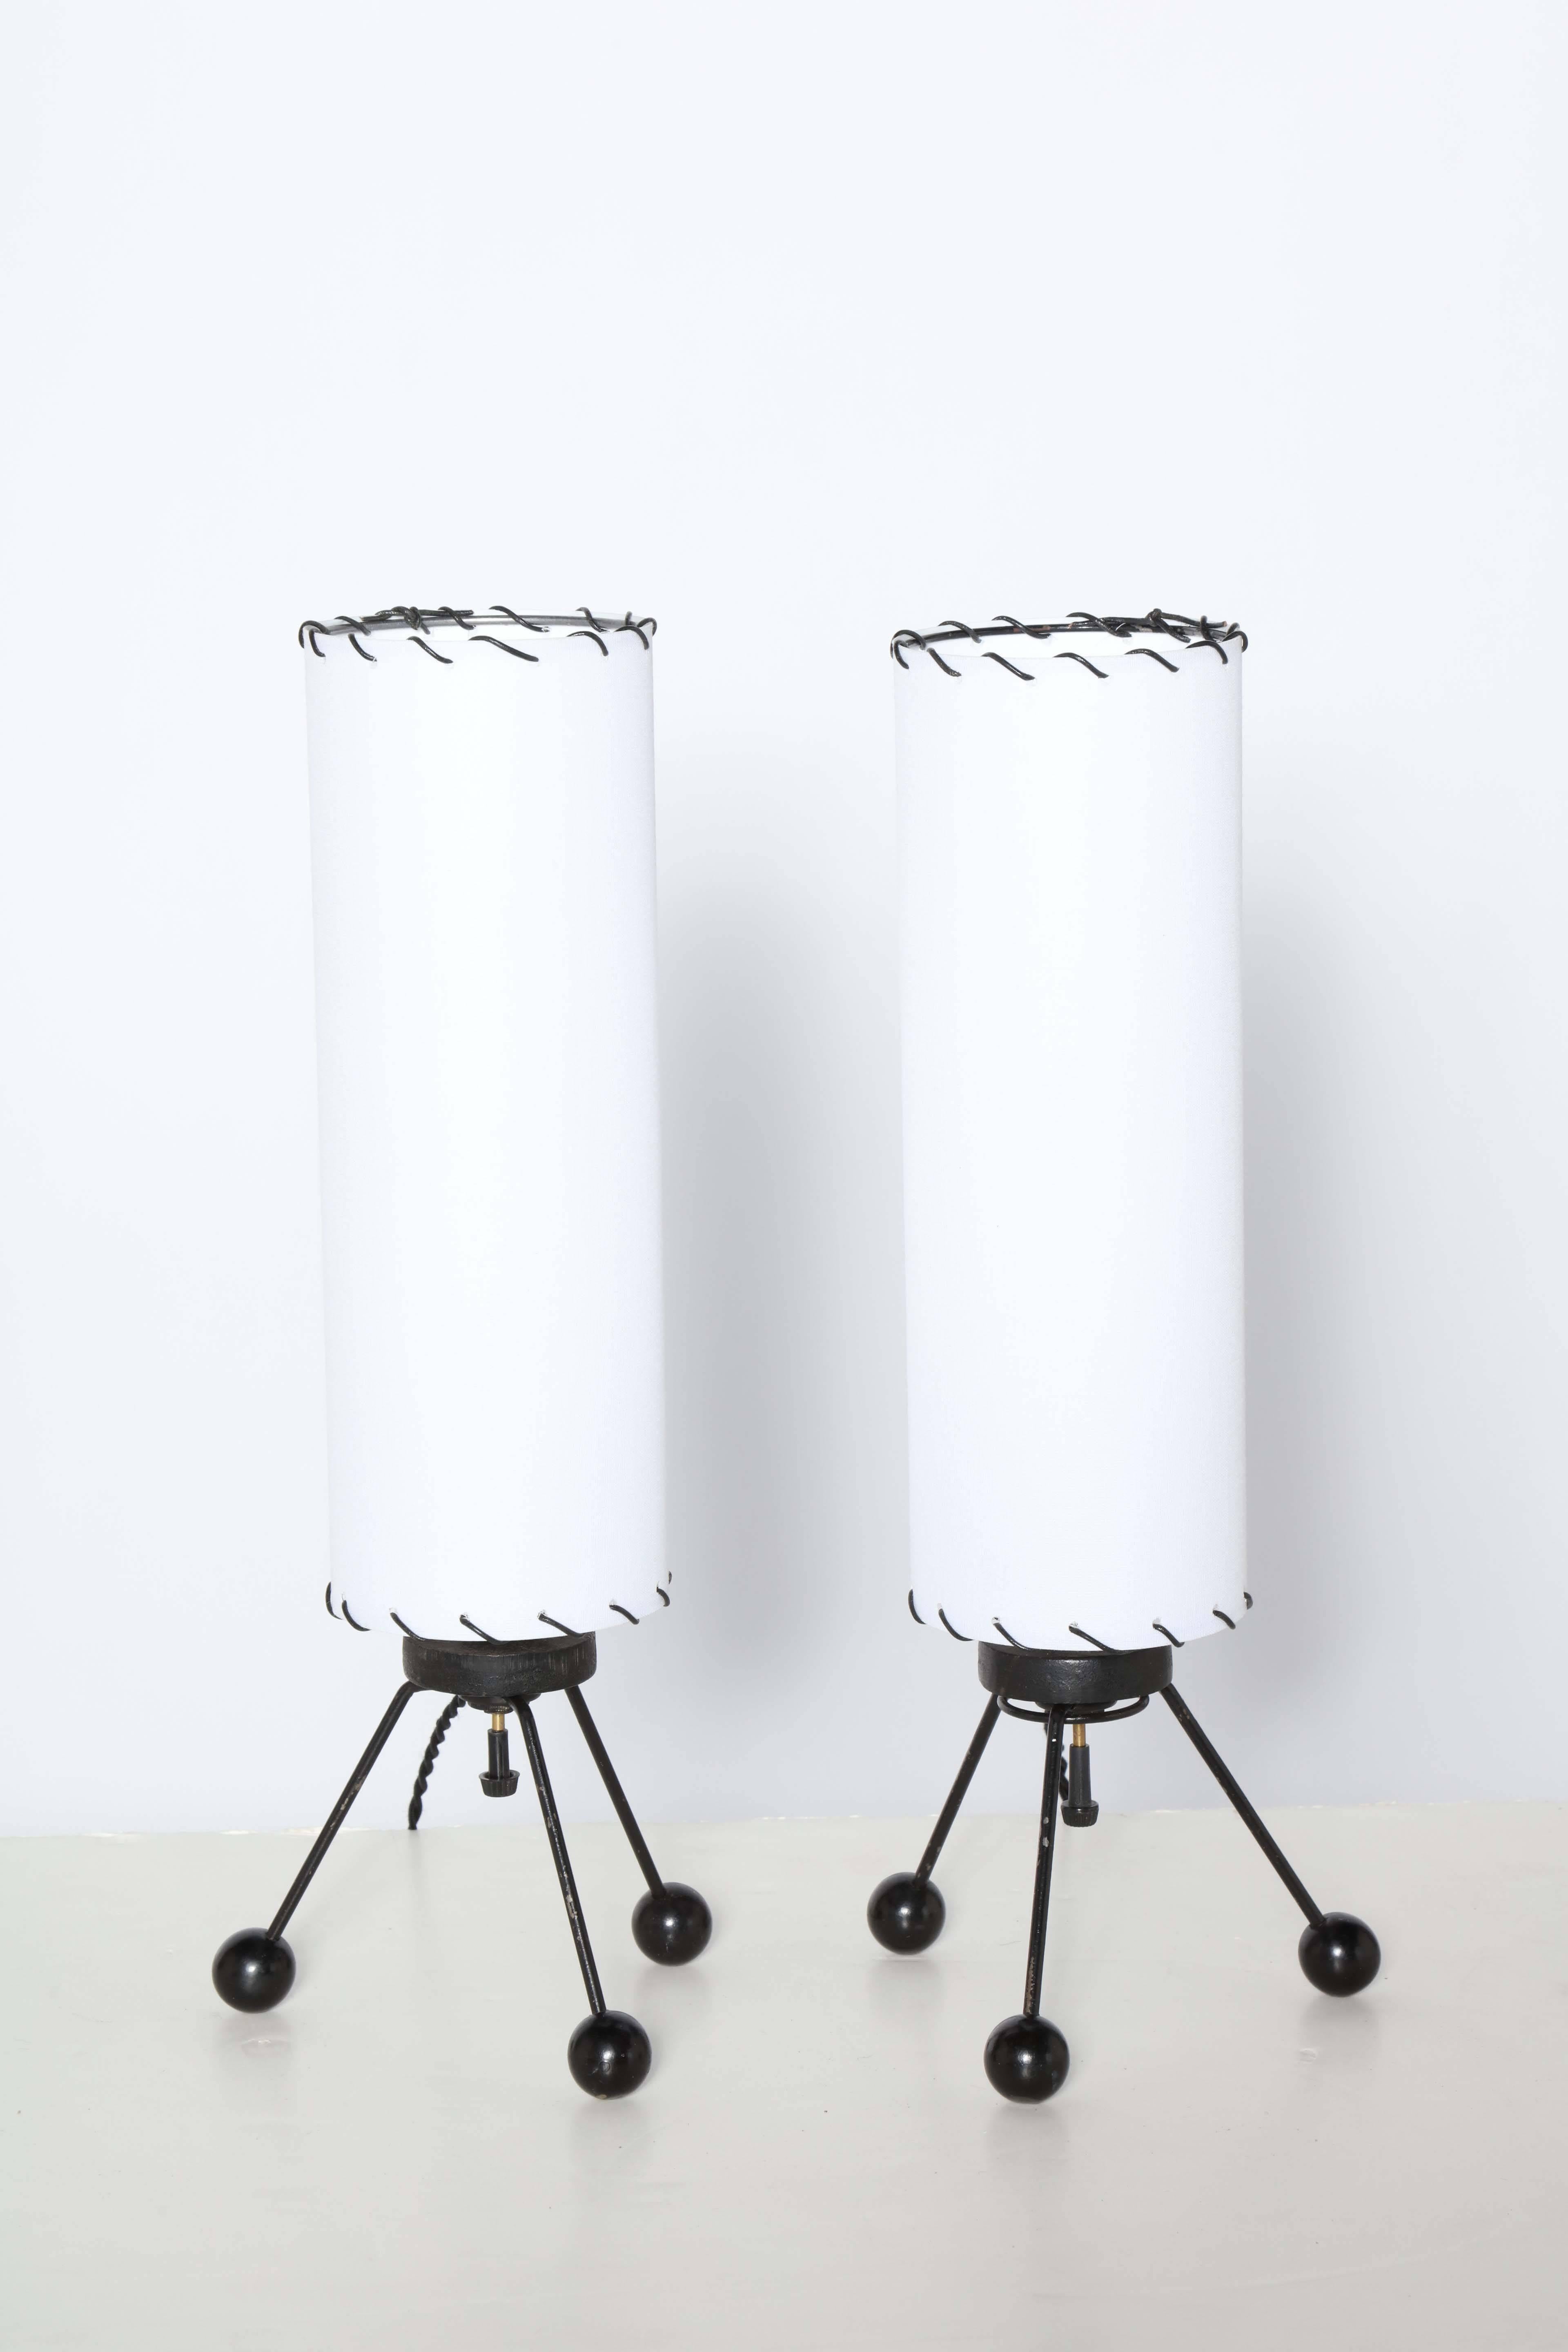 Kleinere American Atomic Black Wire Tripod Lamps mit weißen Leinenschirmen von The Verplex Company, um 1950. Mit dreibeinigen schwarzen Drahtbeinen, runden schwarzen Holzkugelfüßen und schlanken, zylindrischen, neu bezogenen weißen Leinenschirmen